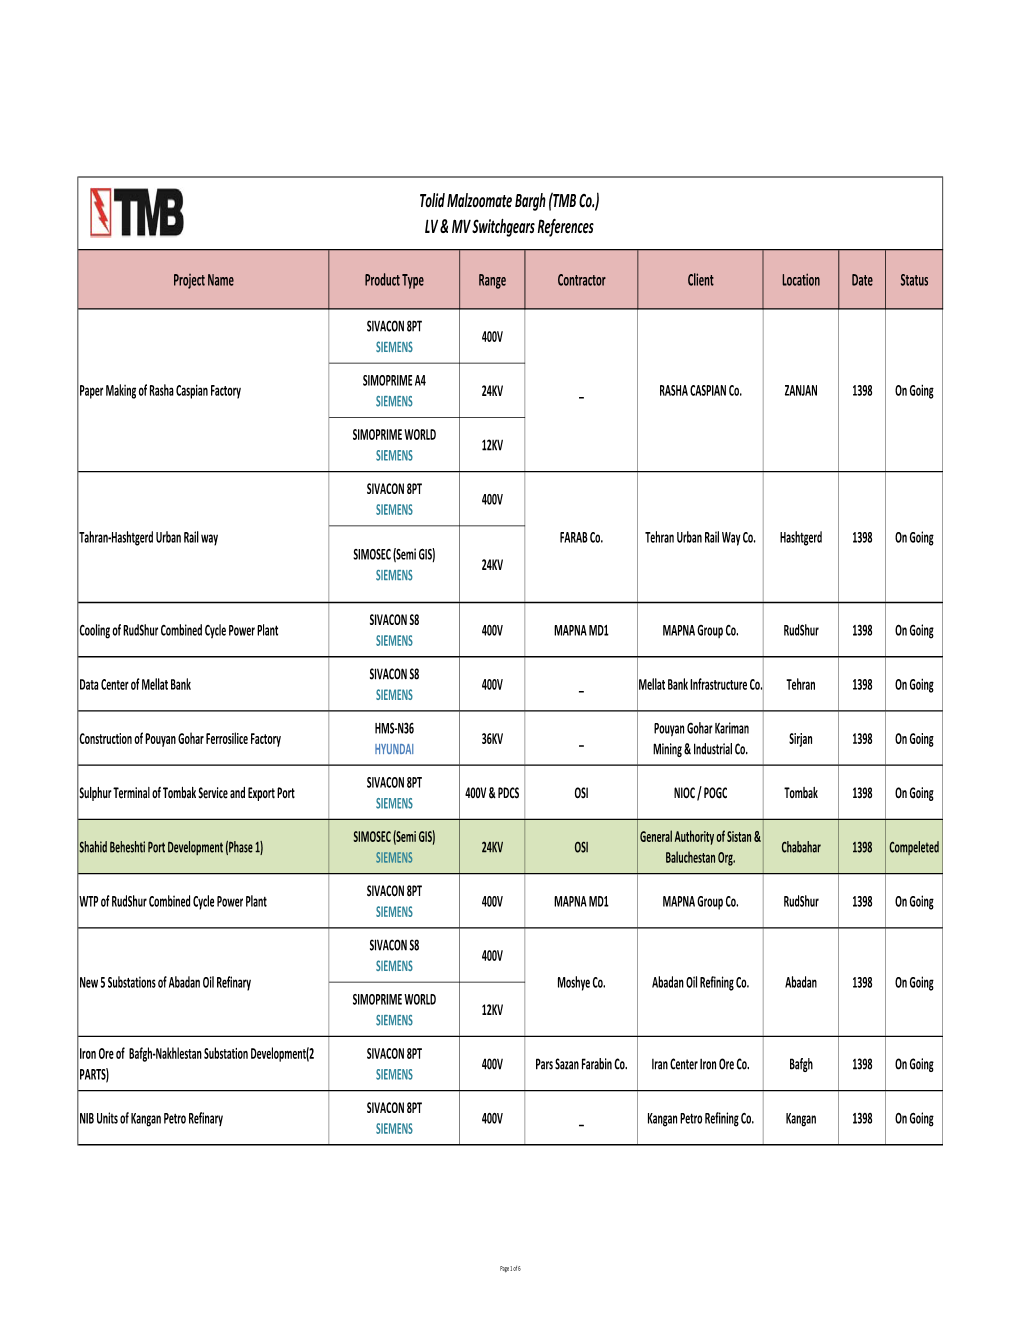 TMB LV-MV-SC Latest REF 14-08-1398(Rev04 Resume)